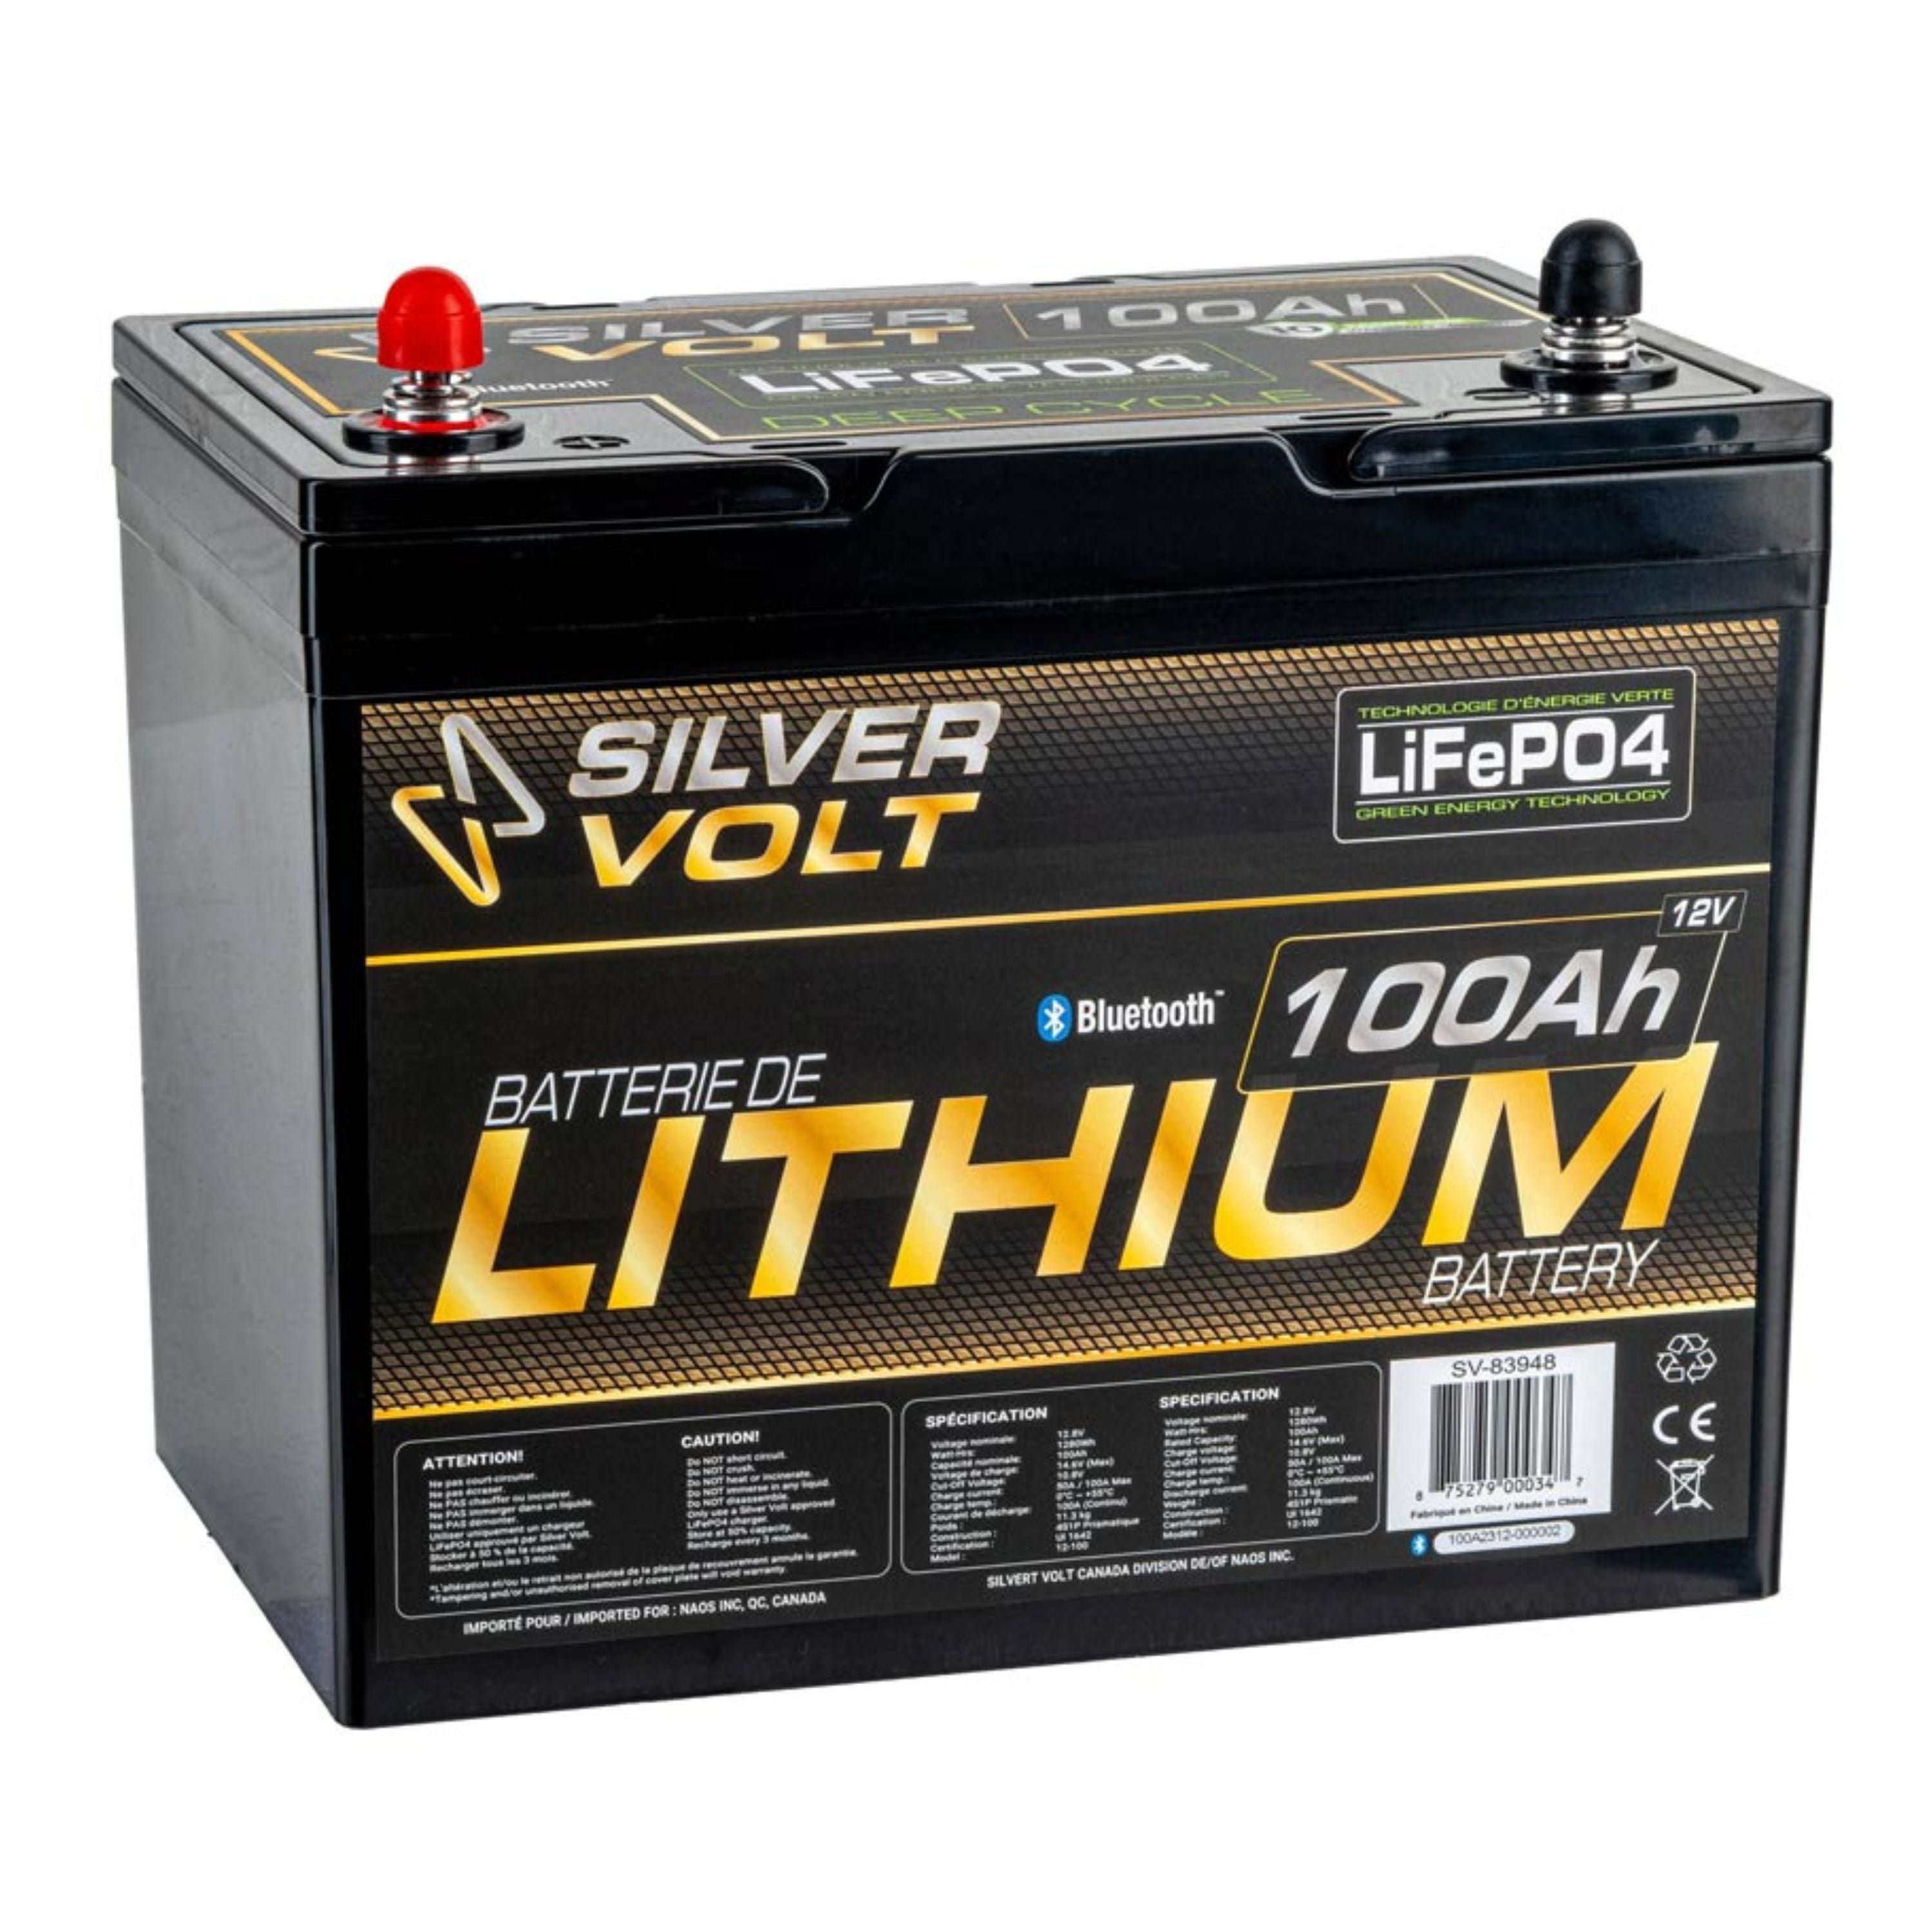 Batterie au lithium rechargeable "LiFePO4" - 100 A